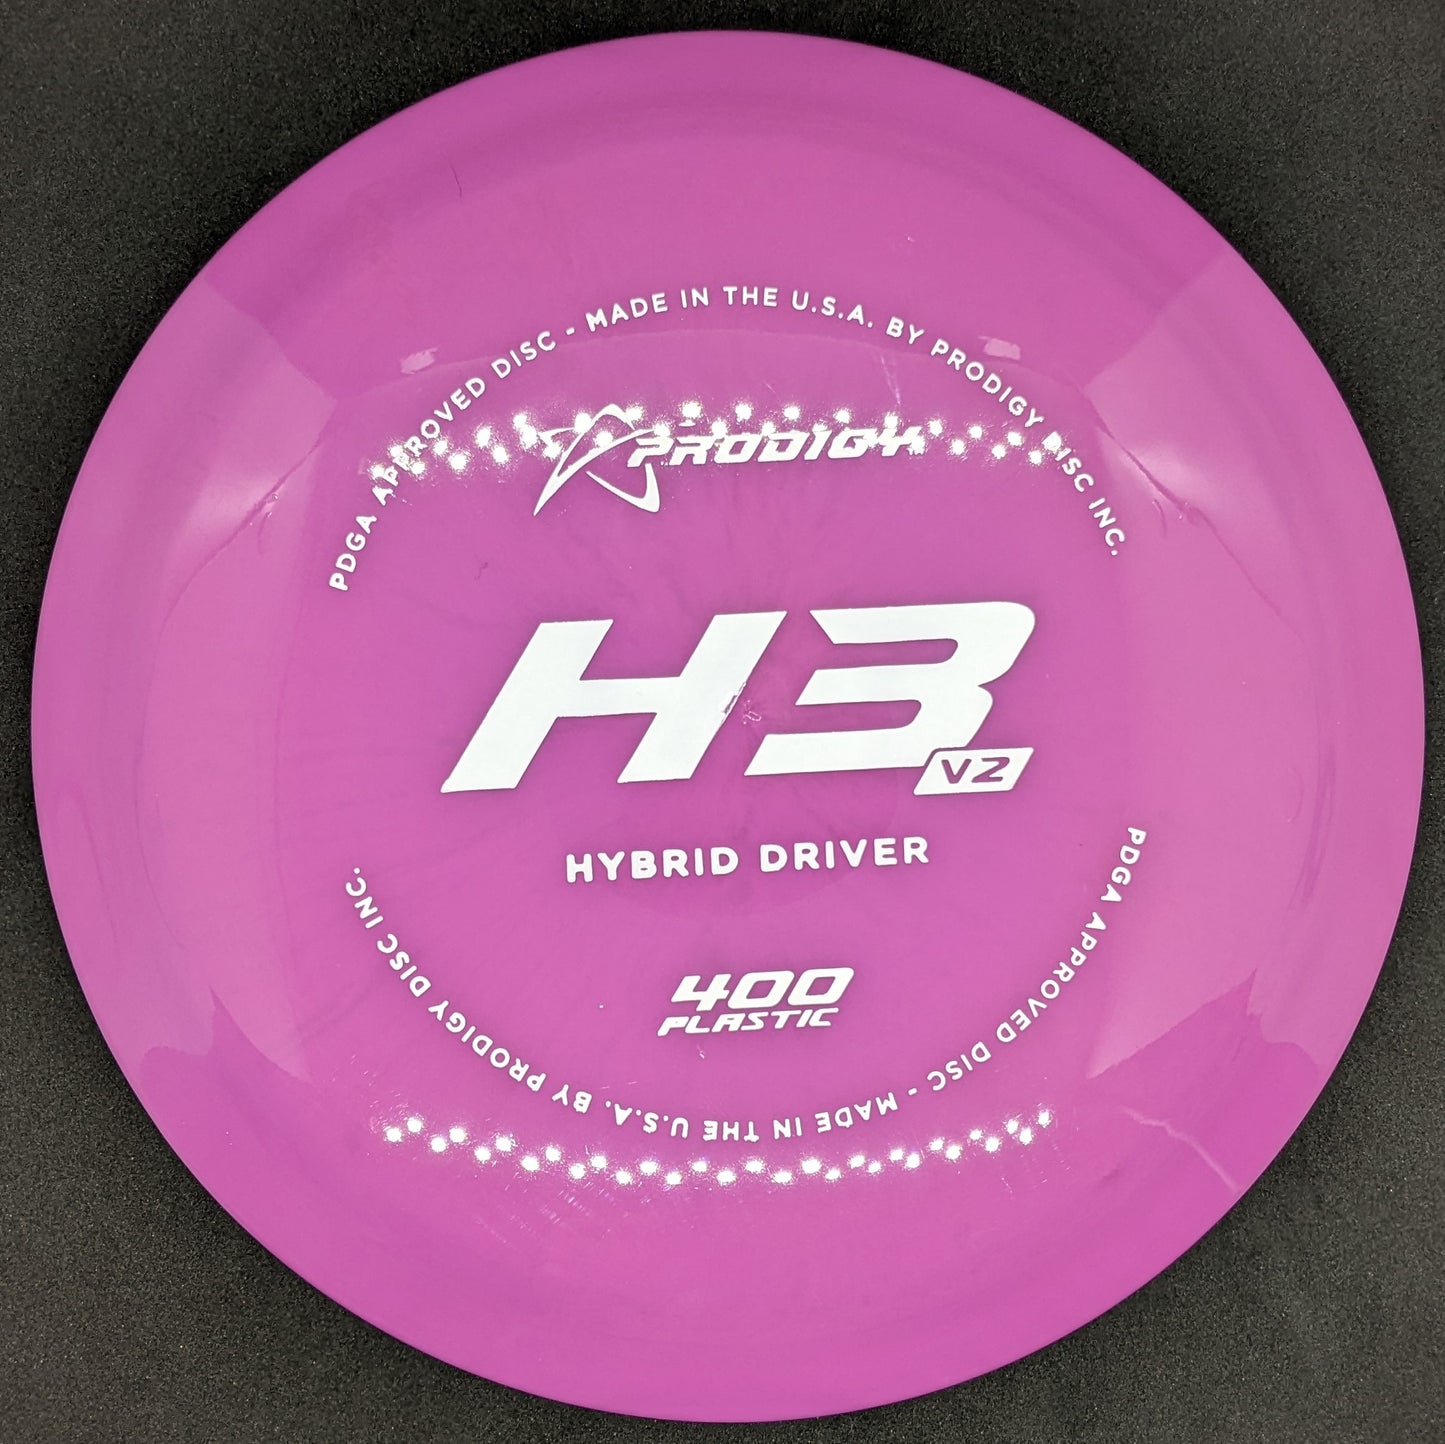 Prodigy - H3V2 - 400